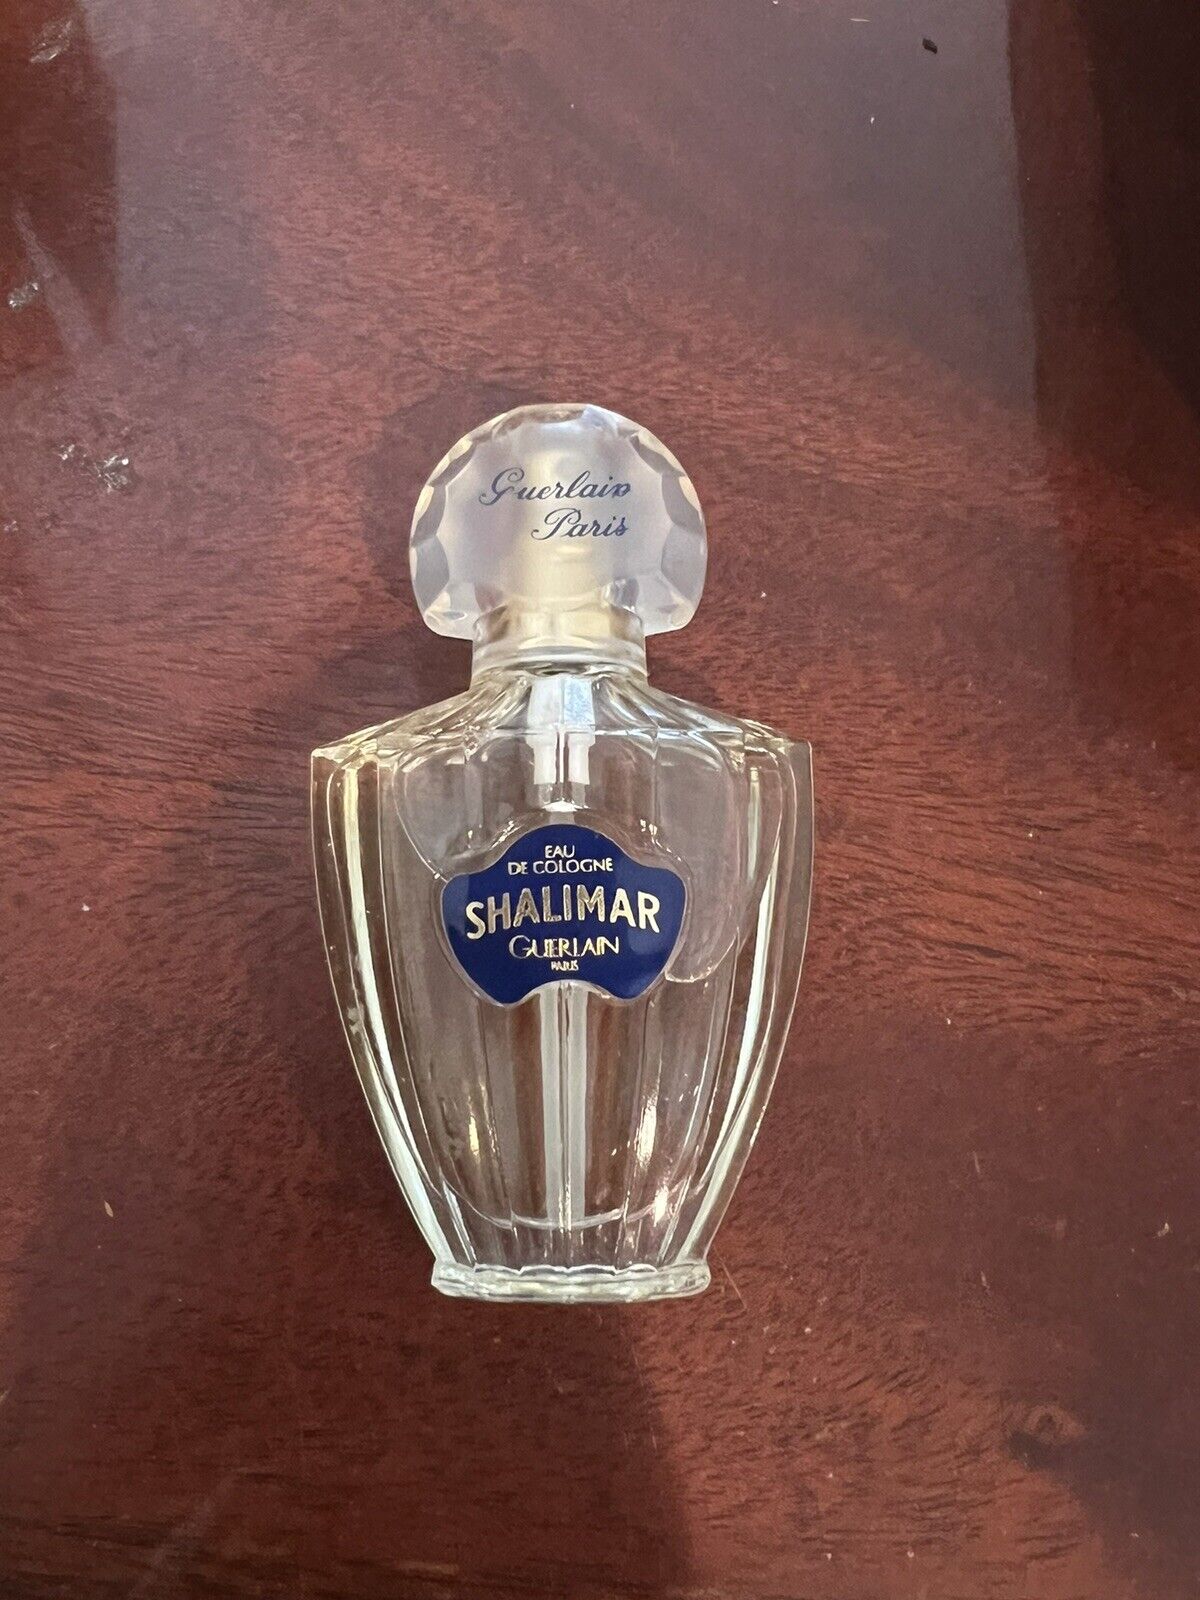 Shalimar Guerlain vintage Eau de Cologne 1oz